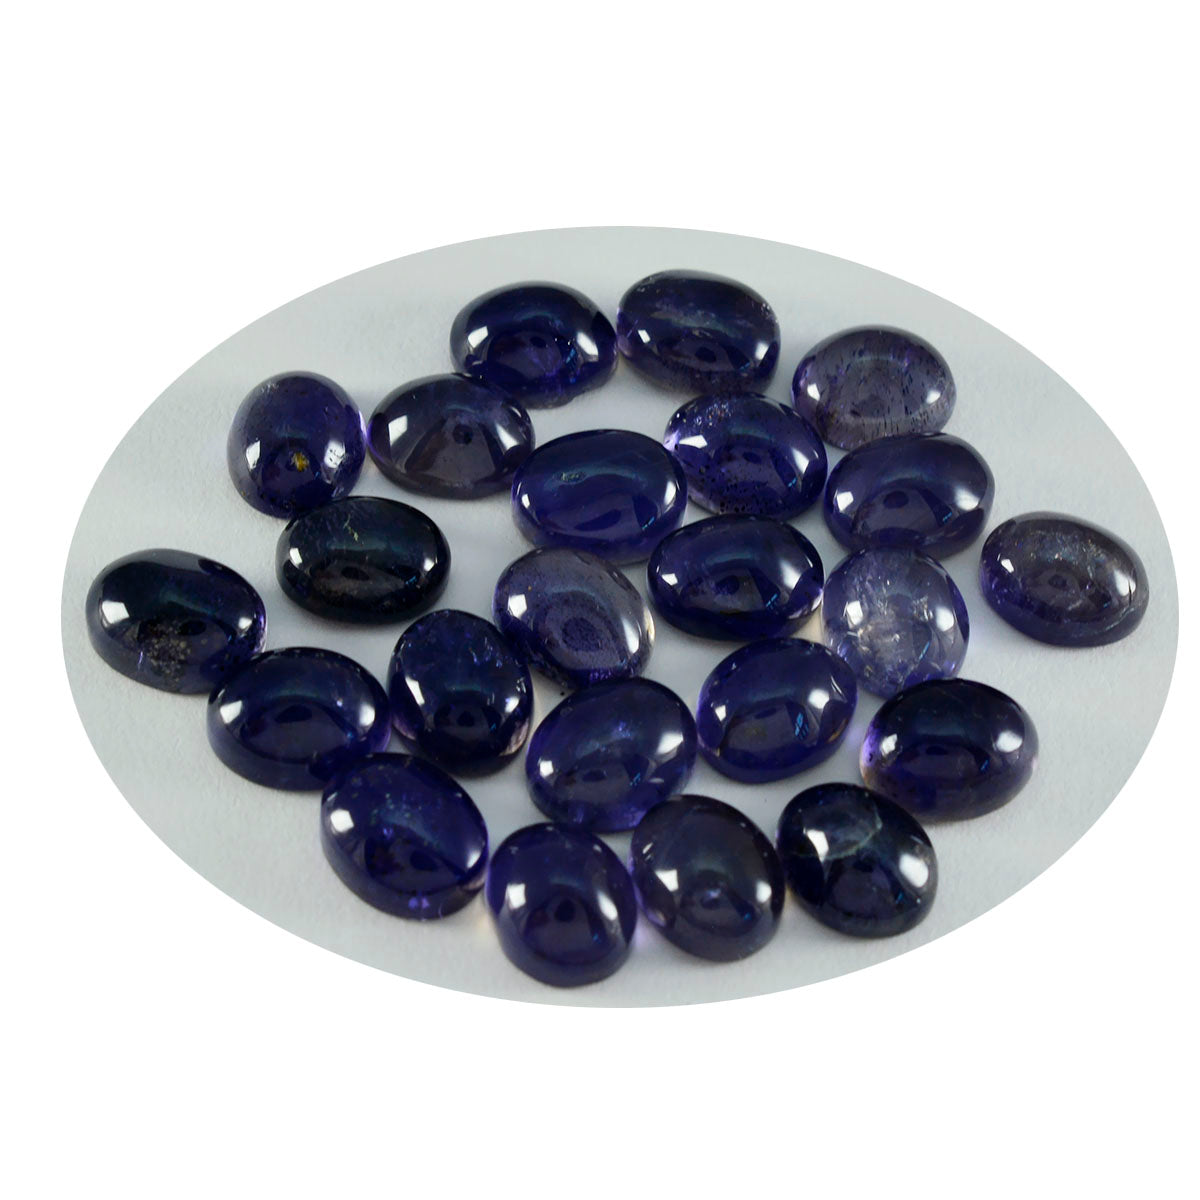 riyogems 1 pz cabochon di iolite blu 9x11 mm di forma ovale, gemme sfuse di ottima qualità